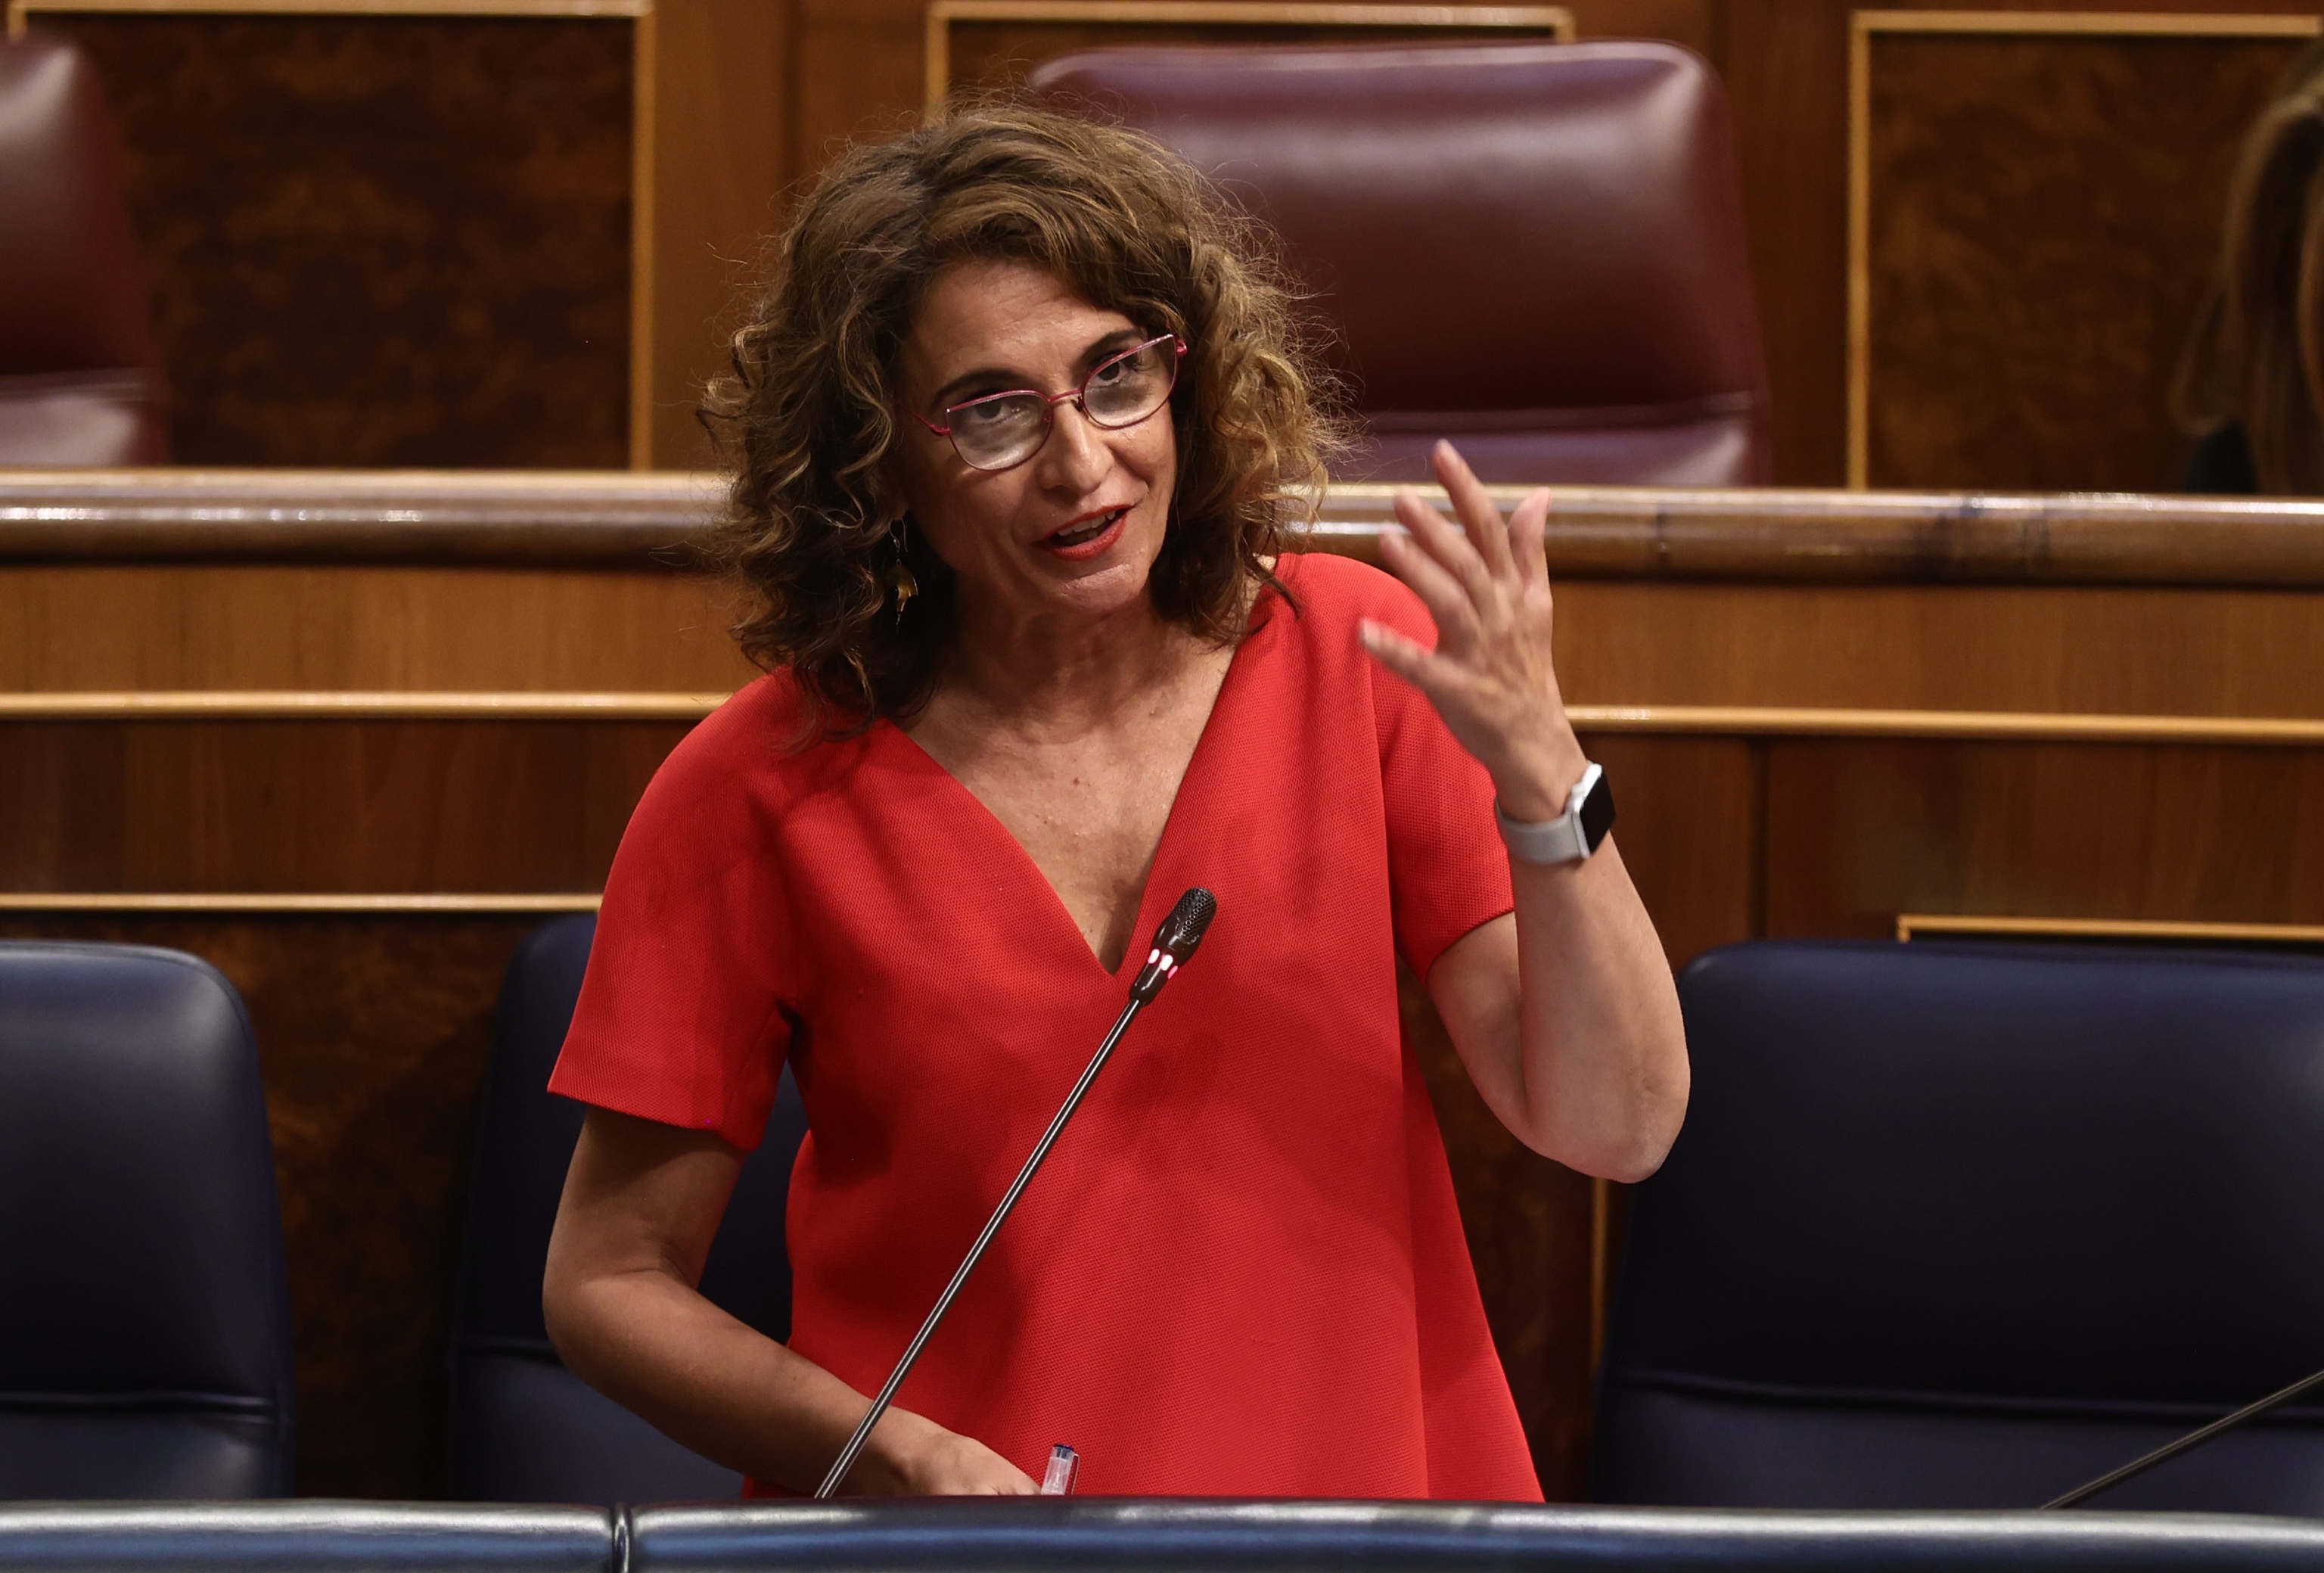 La ministra de Hacienda y Función Pública, María Jesús Montero.